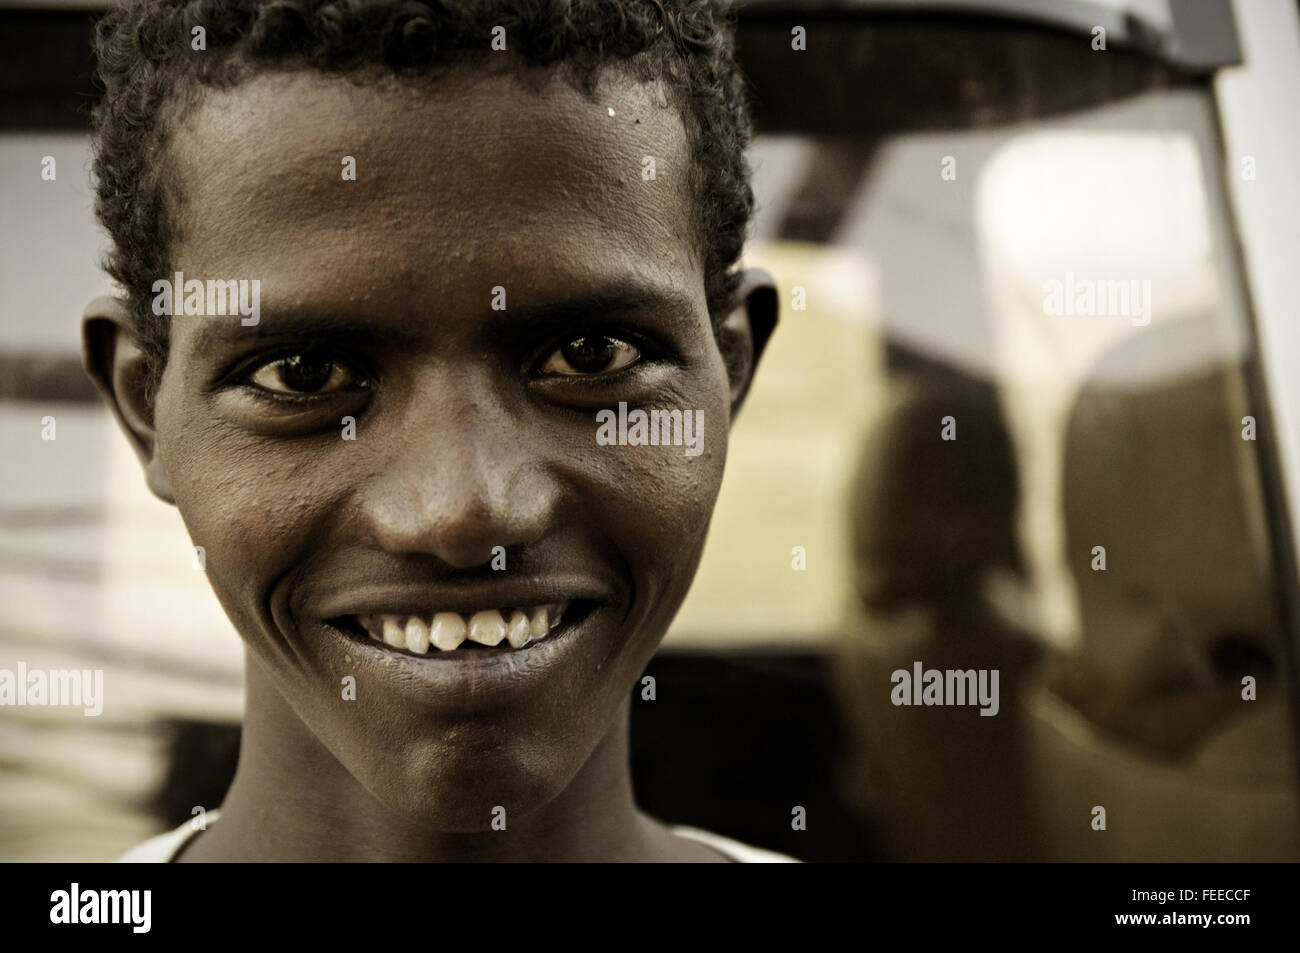 Young Afar man with sharp teeth smiling, Ahmed Ela, Danakil depression, Afar Region, Ethiopia Stock Photo